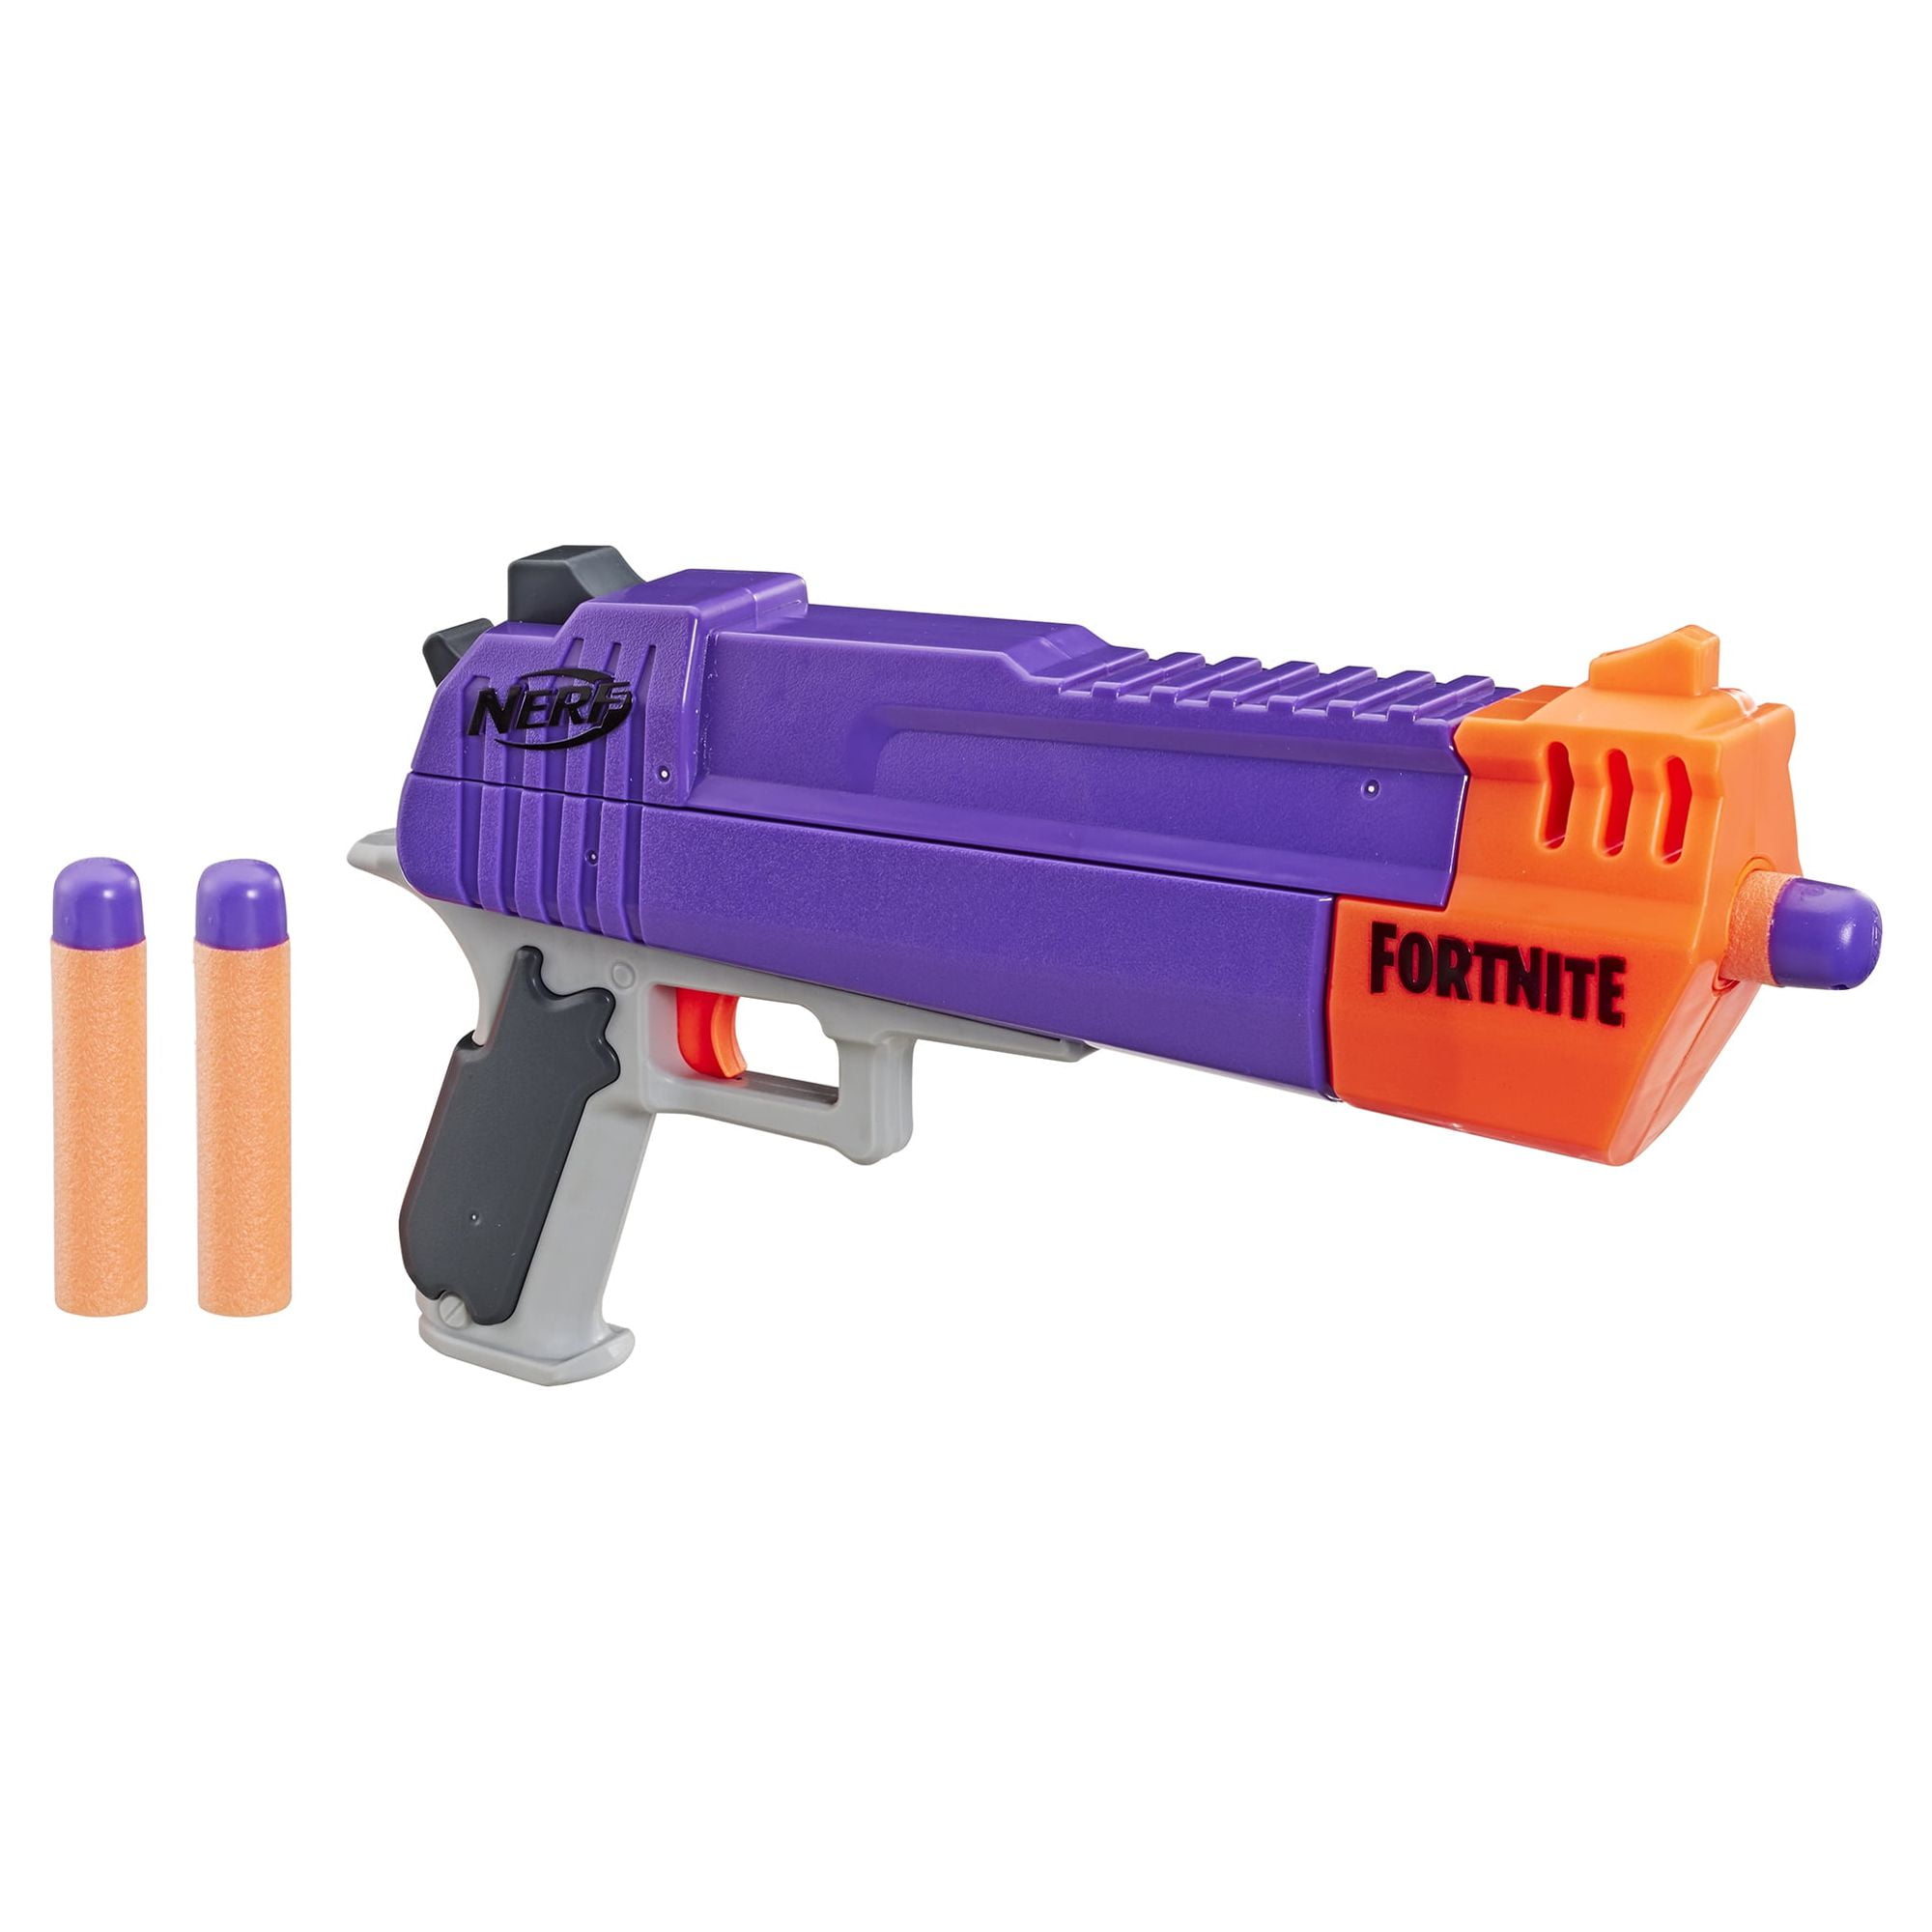 Pistola Nerf Fortnite HC E